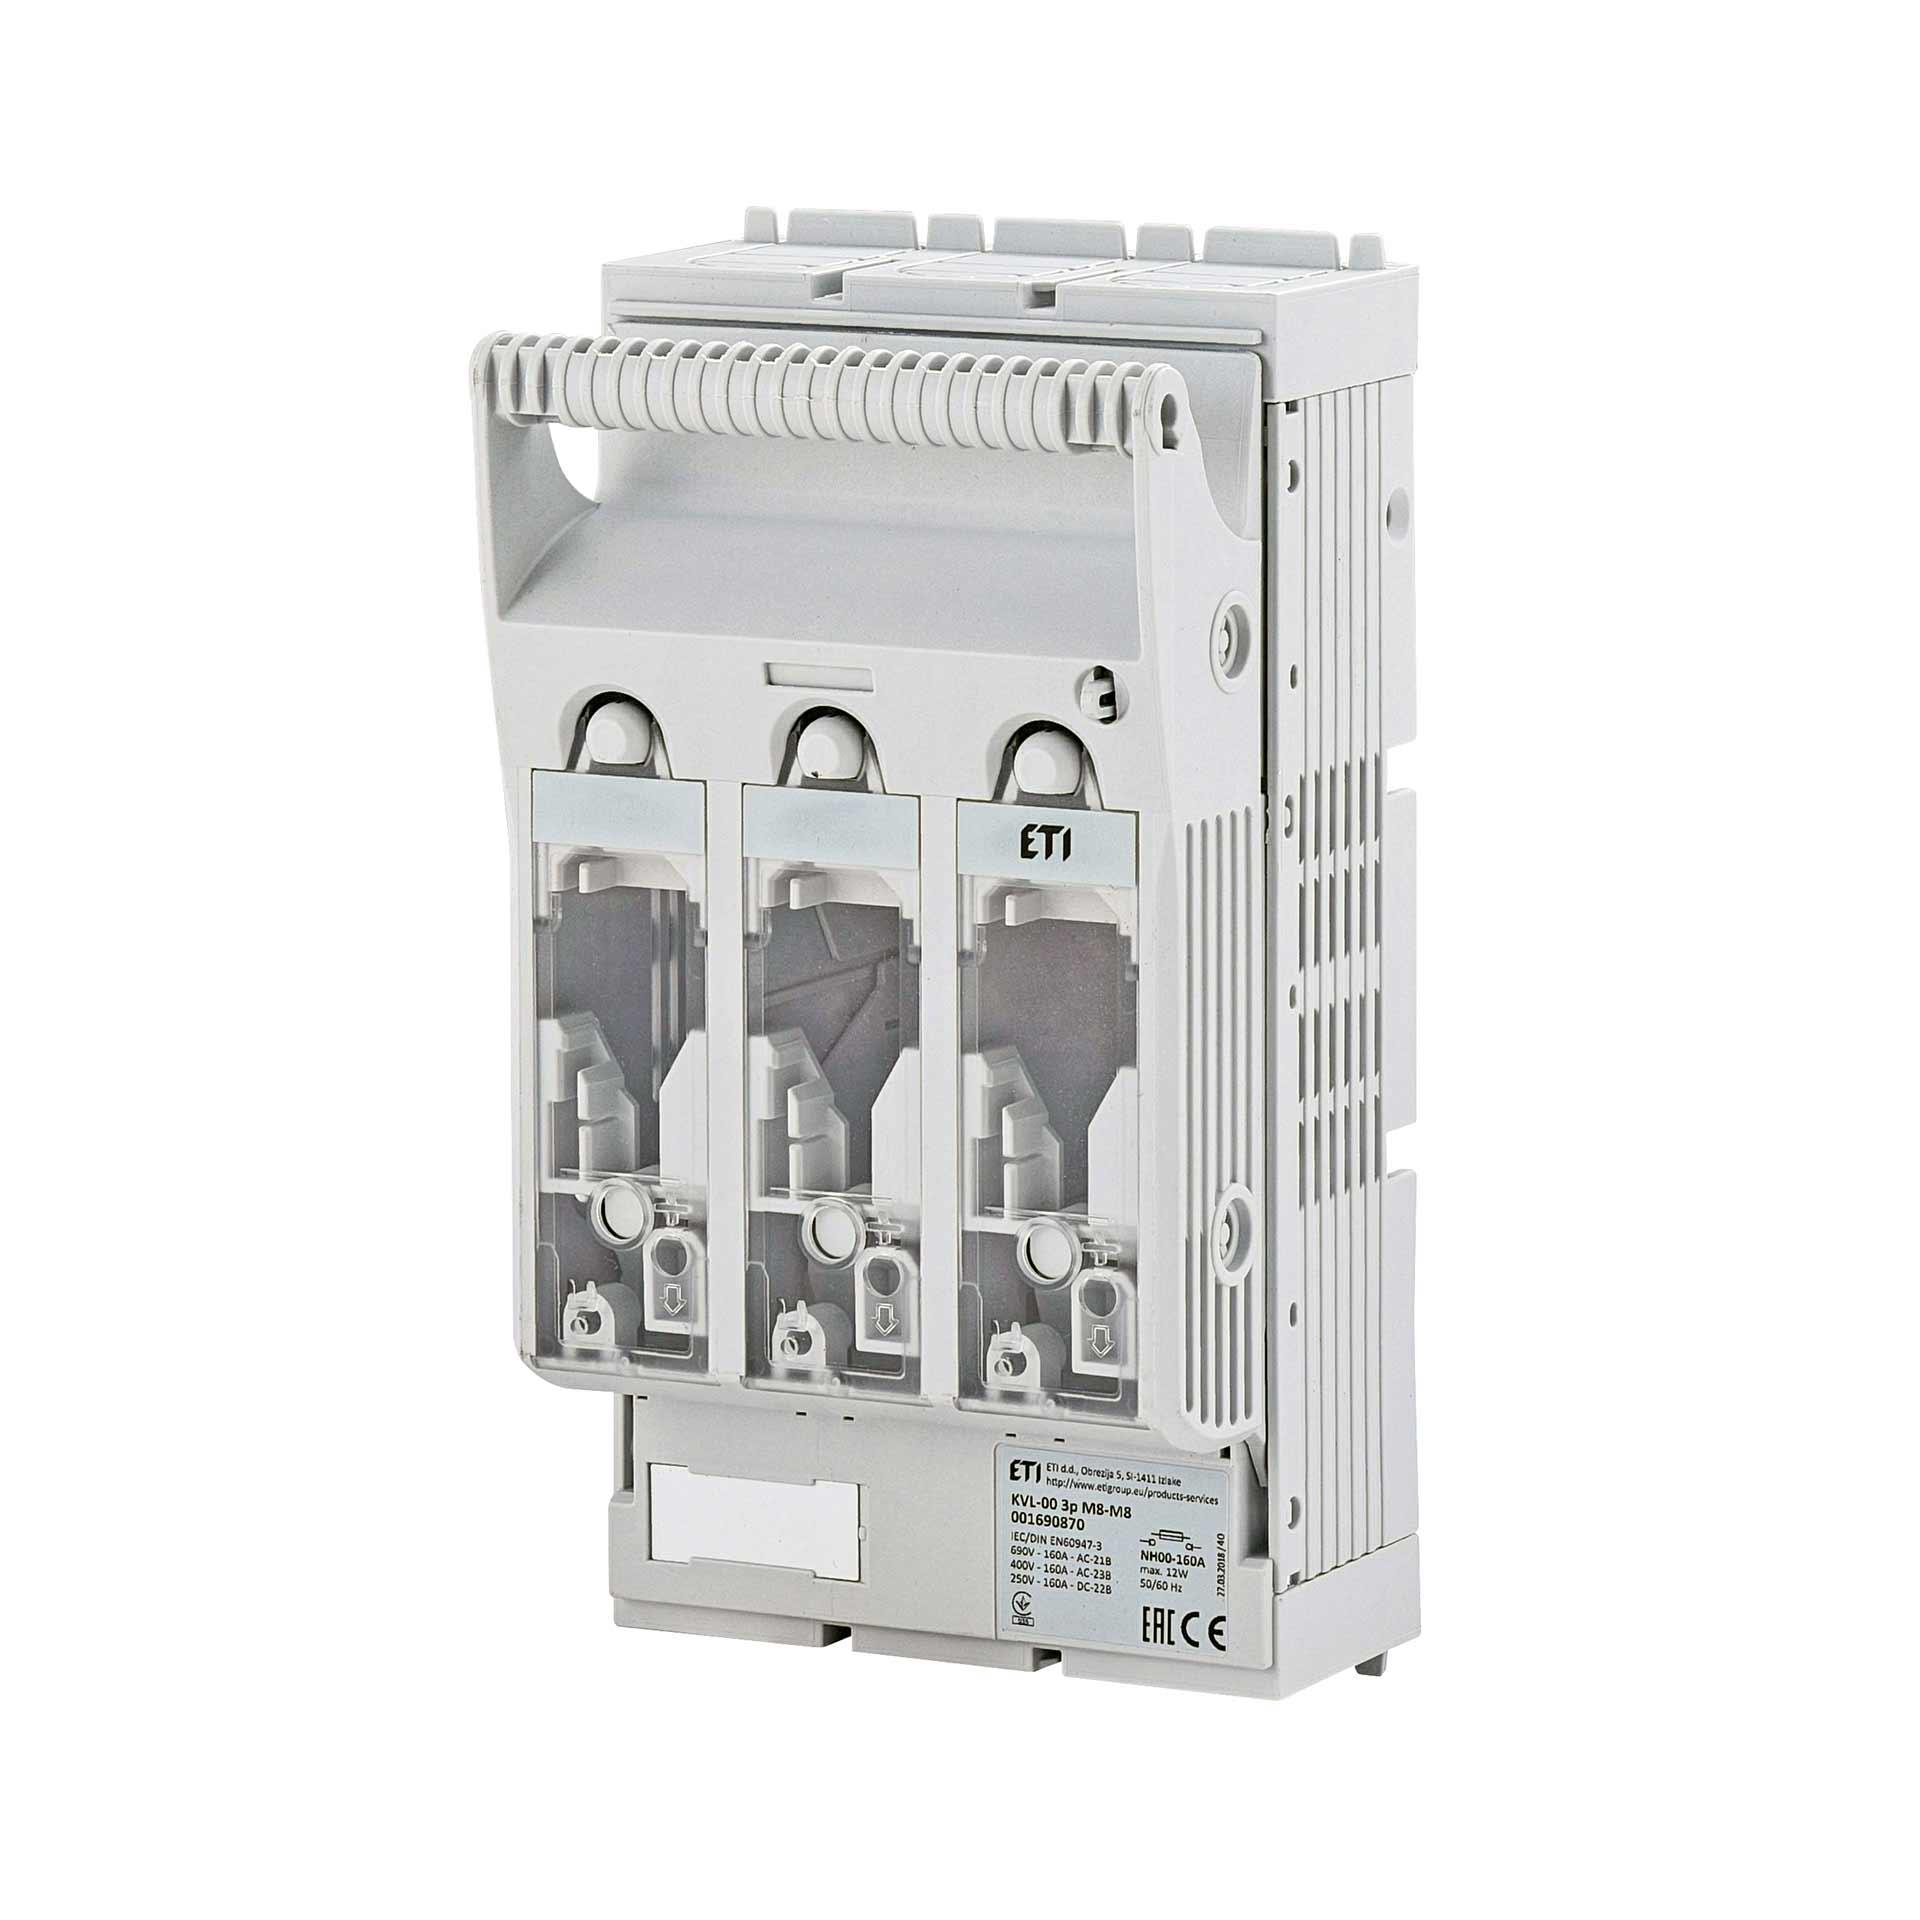 Interrupteur-sectionneur-fusible HPC Gr.00, 3P, Max. 160A, KVL-00 R95-R95 (montage en saillie)